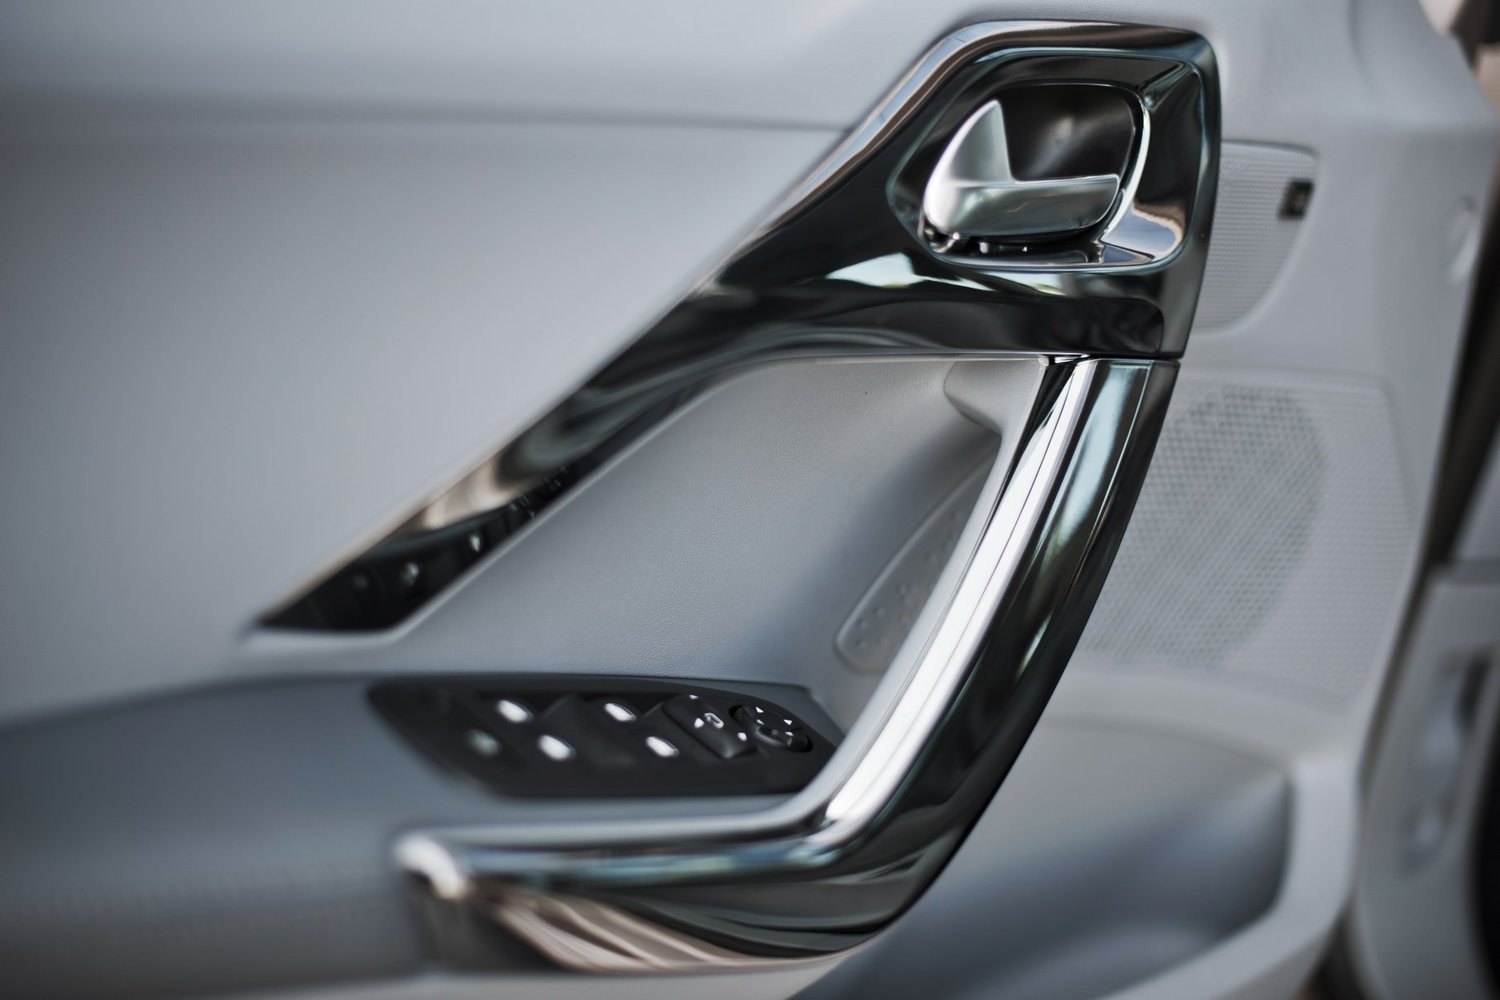 хэтчбек 5 дв. Peugeot 208 2013 - 2015г выпуска модификация 1.2 AMT (82 л.с.)